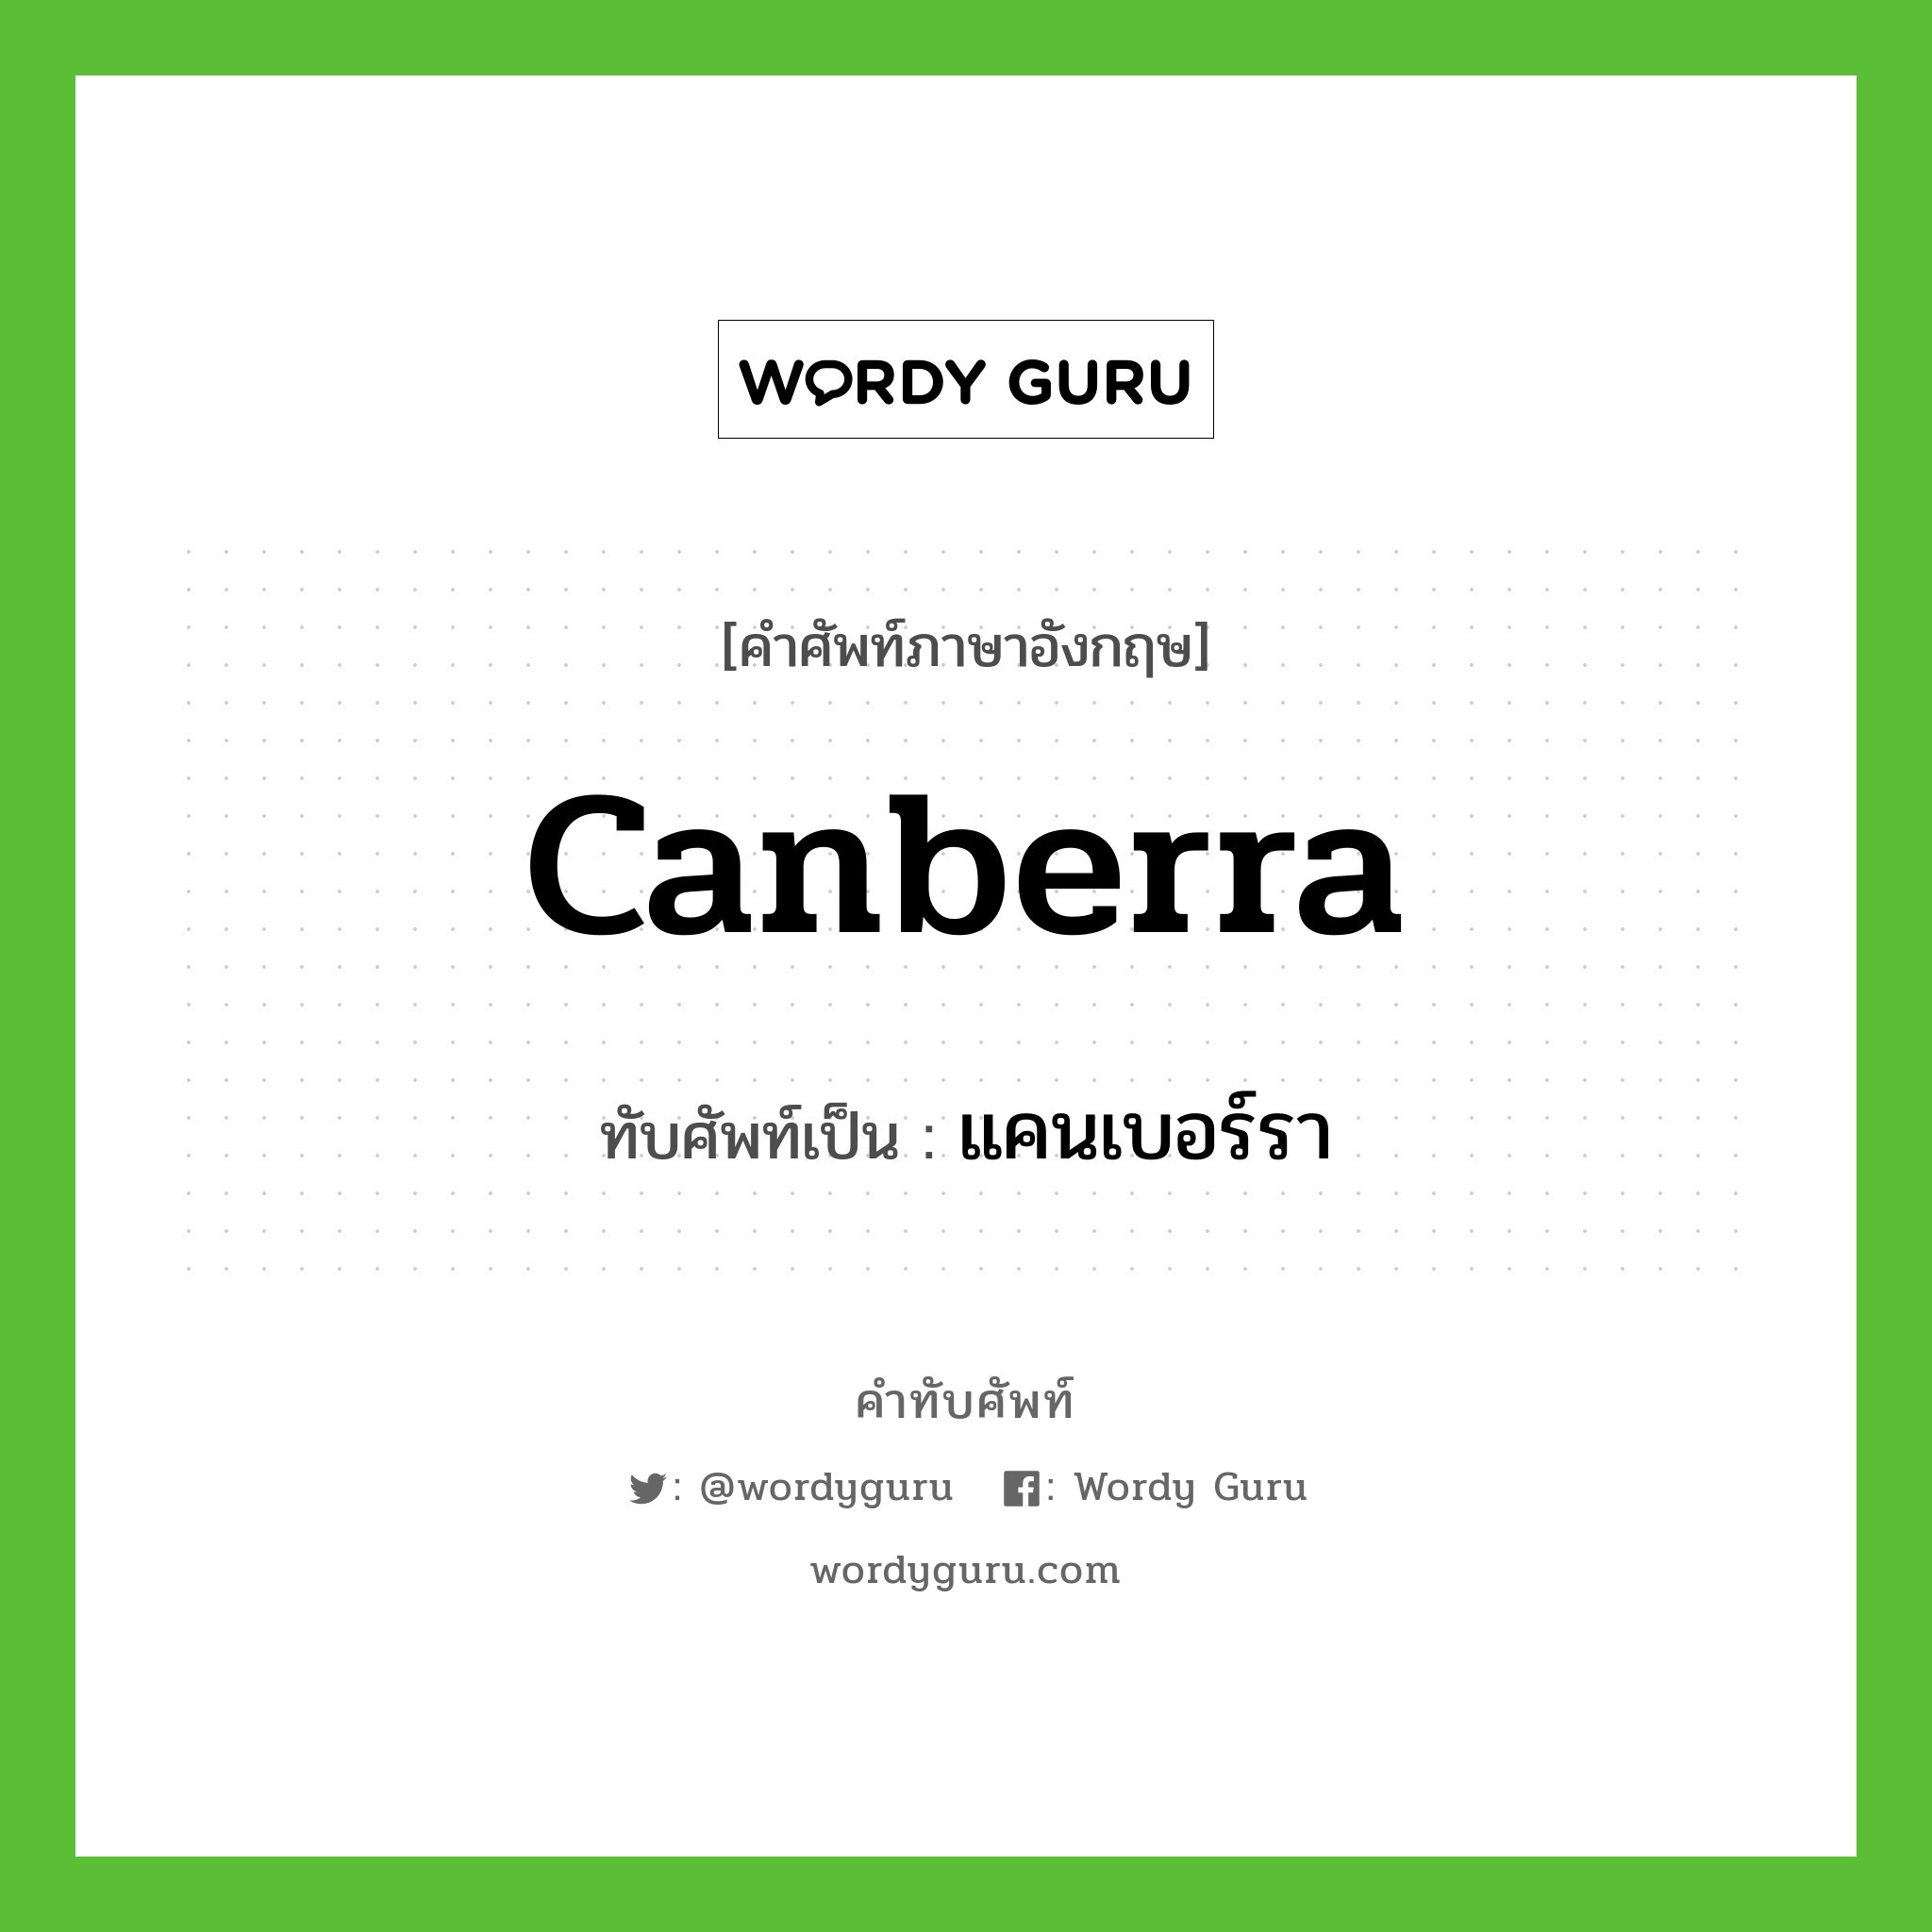 Canberra เขียนเป็นคำไทยว่าอะไร?, คำศัพท์ภาษาอังกฤษ Canberra ทับศัพท์เป็น แคนเบอร์รา